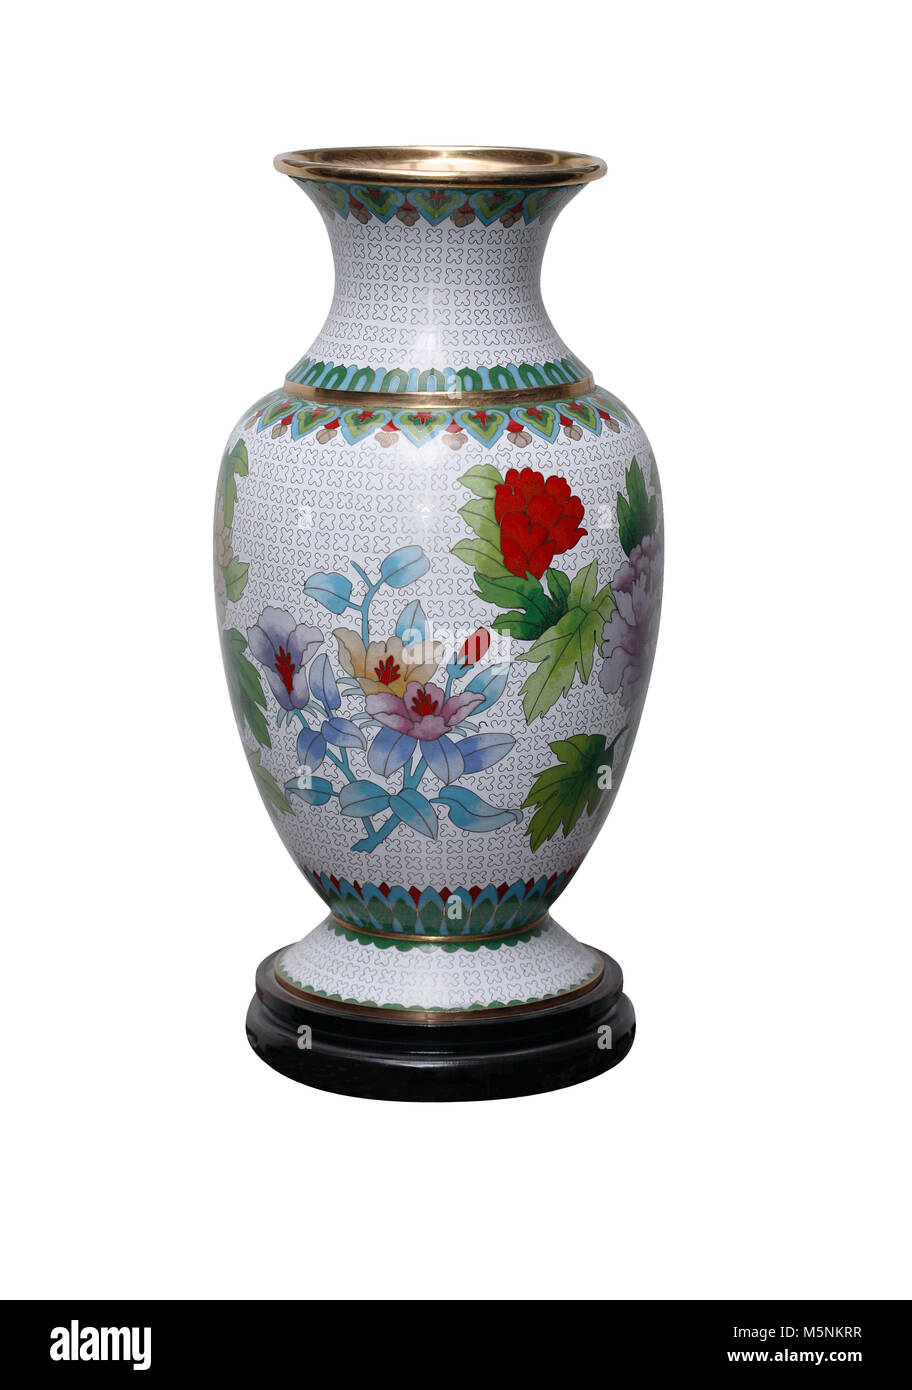 Les Chinois anciens Nice vase isolé sur un fond blanc avec clipping path Banque D'Images